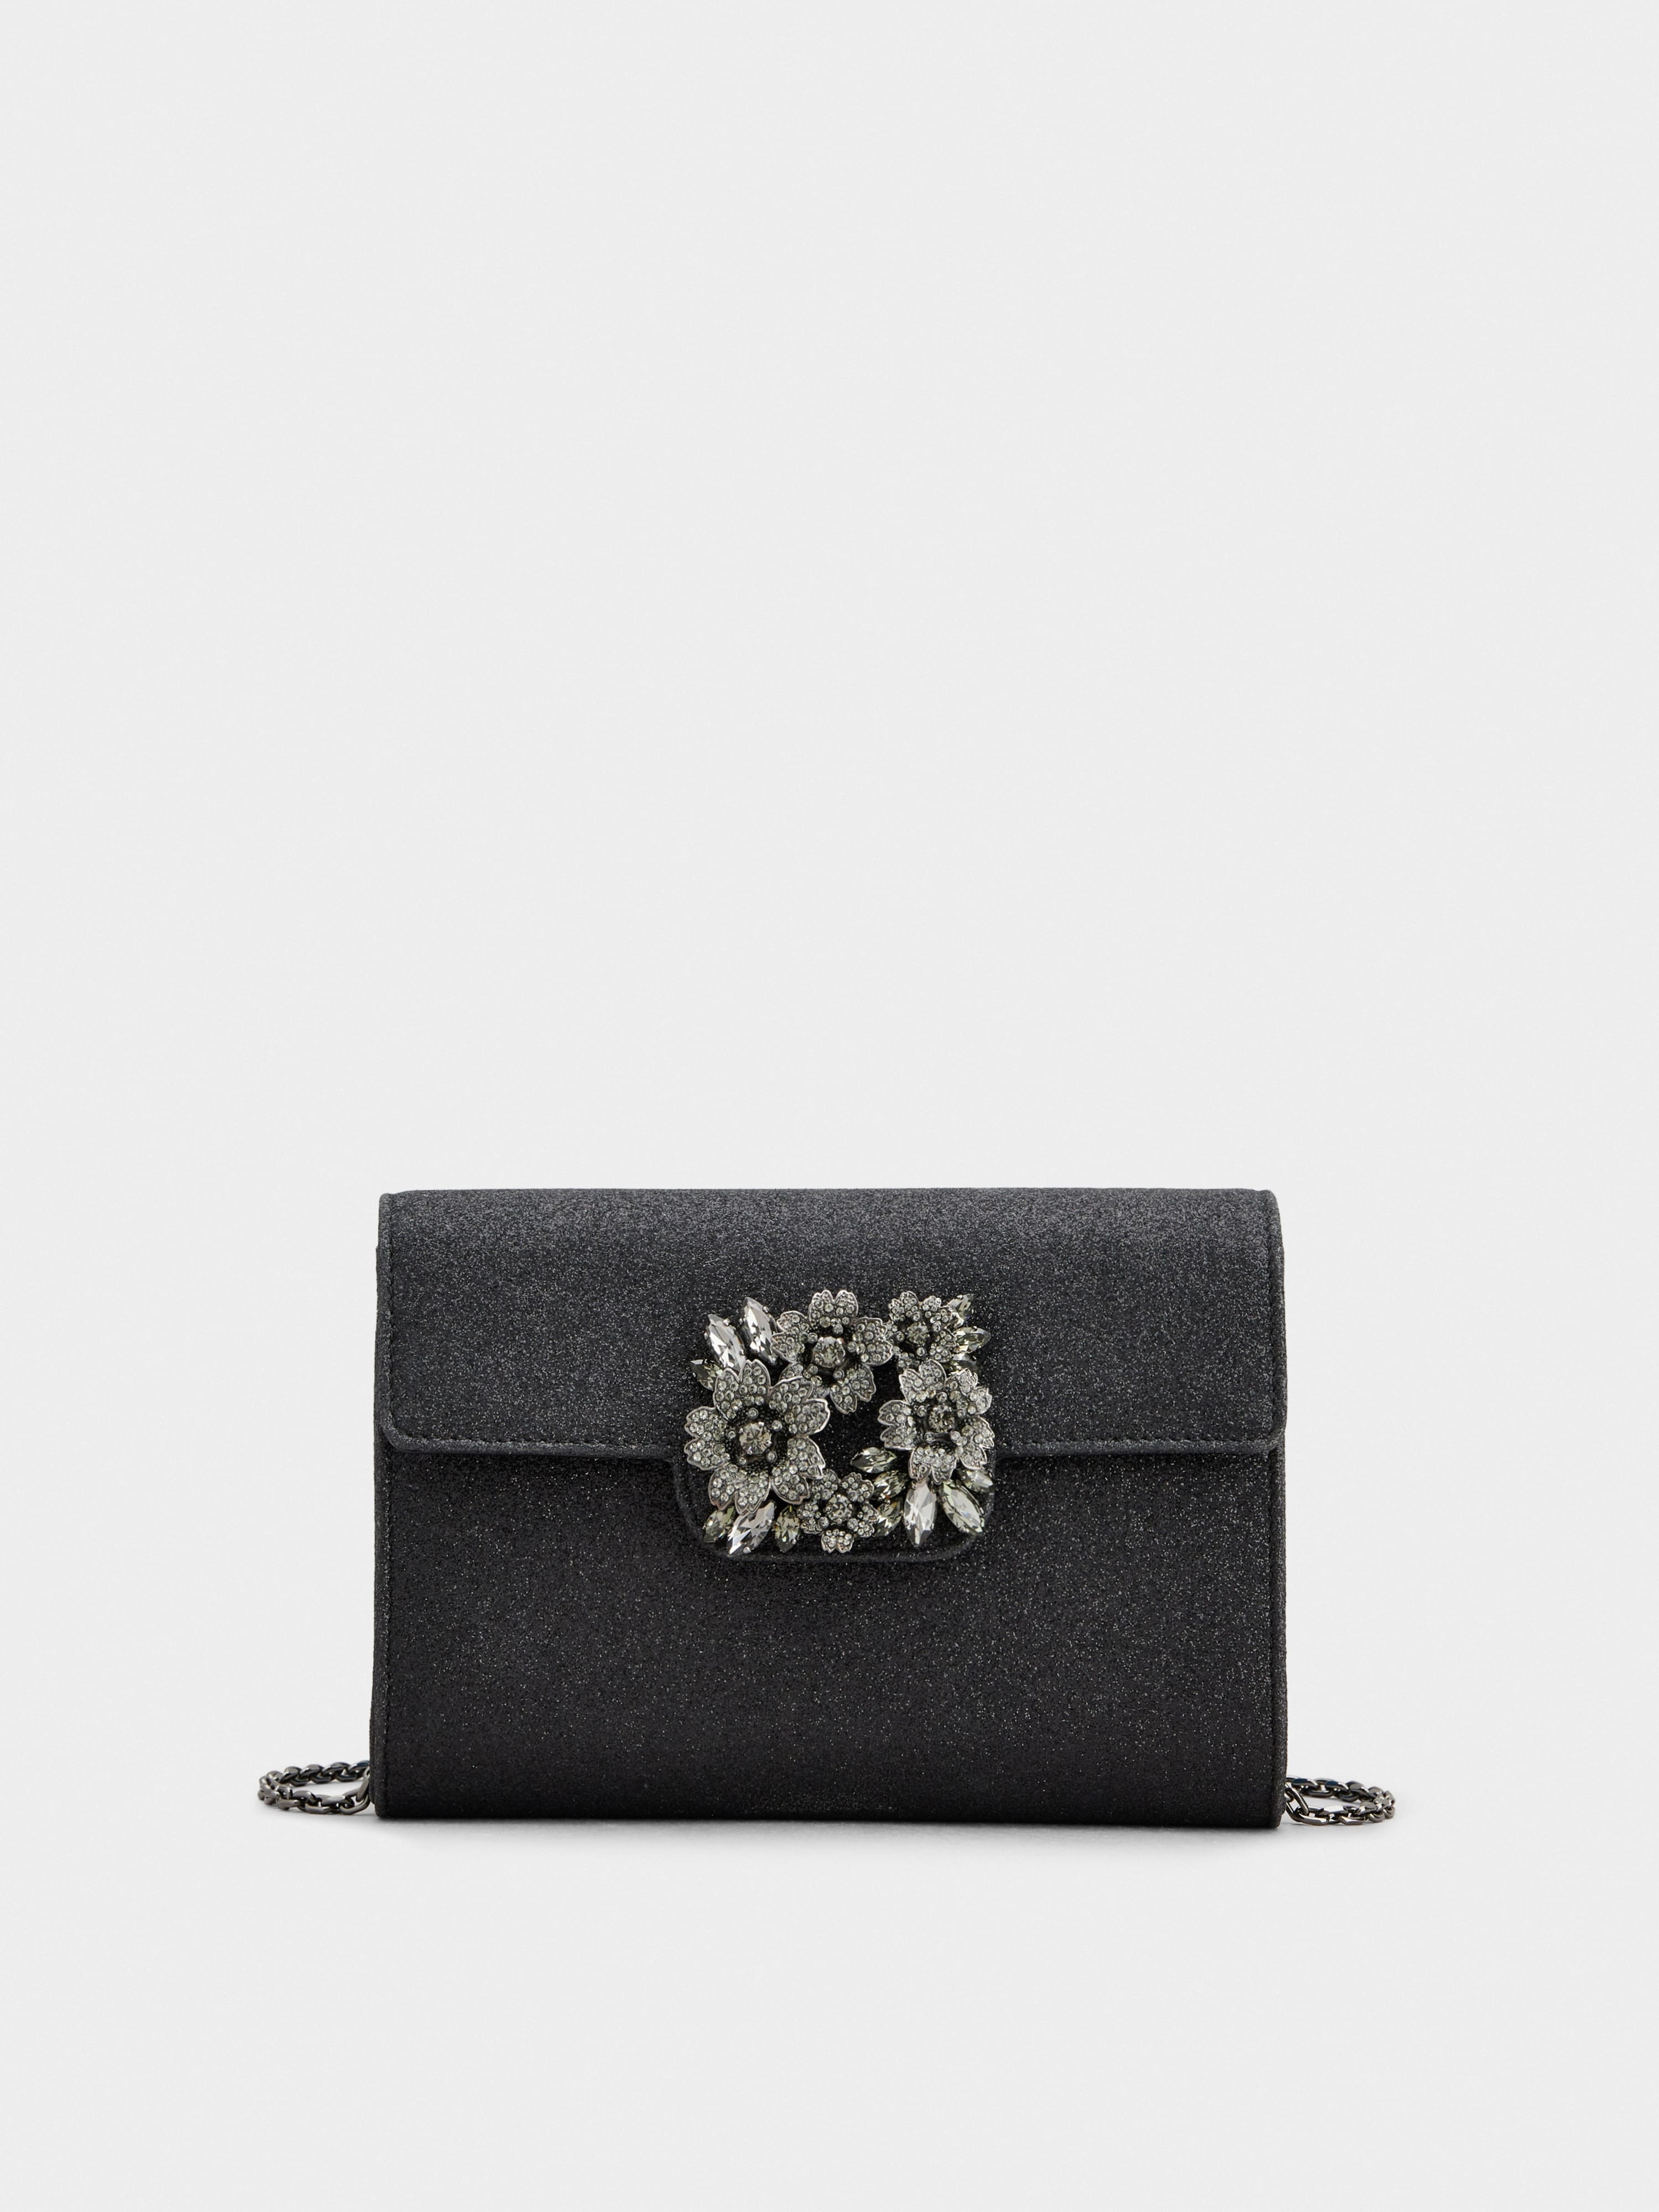 Bouquet Strass Dark Mini Clutch Bag in Glitter Fabric - 1